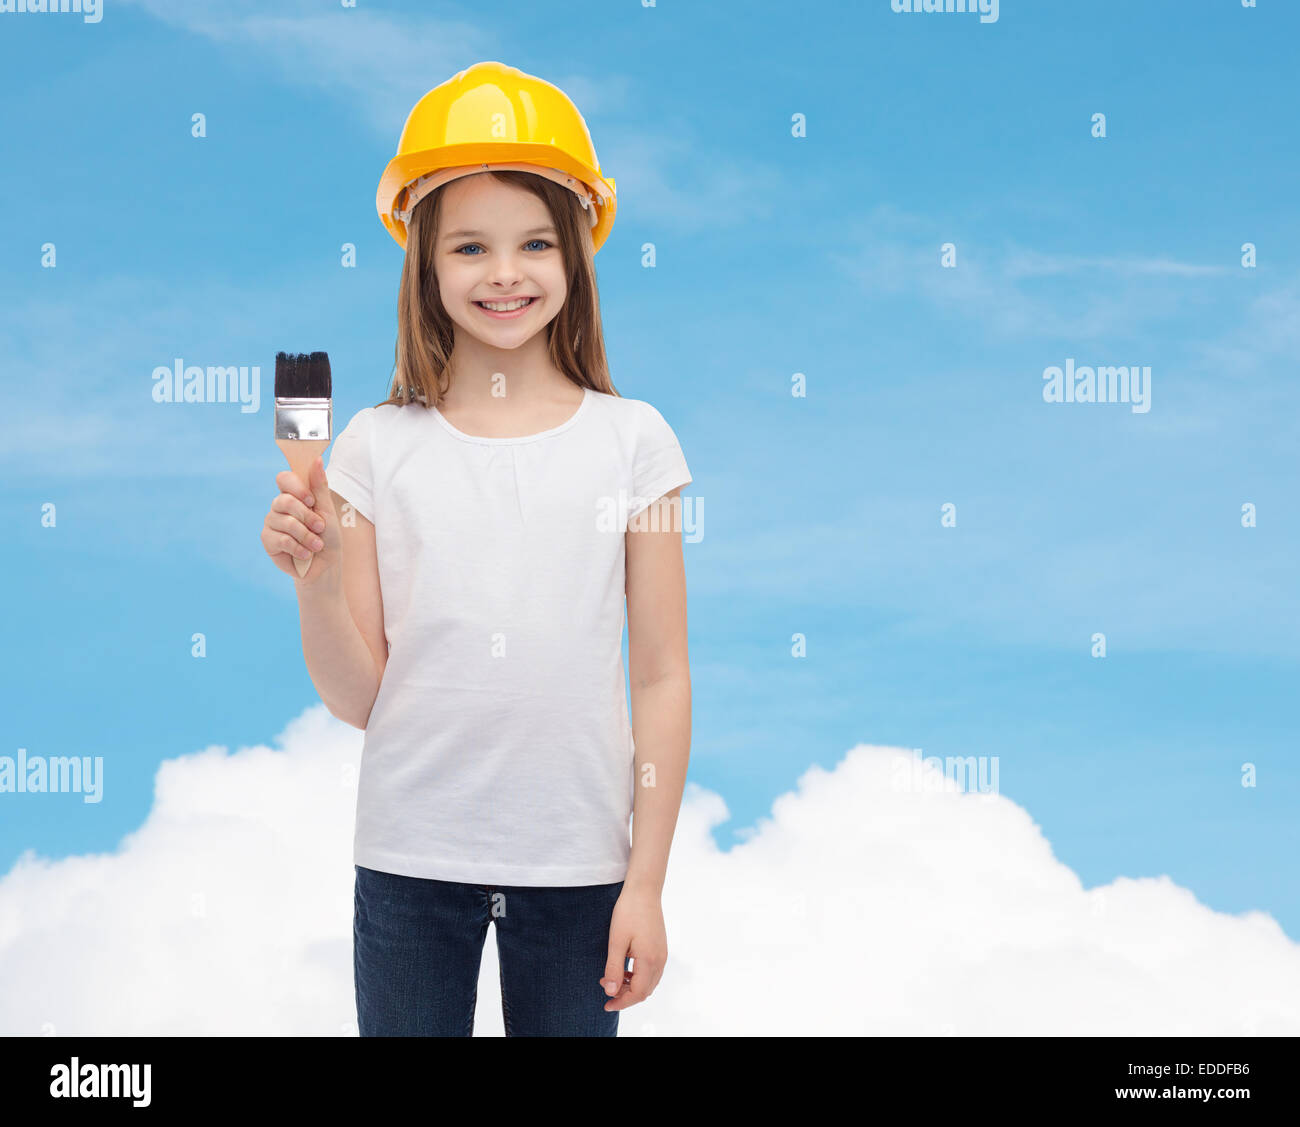 kleines Mädchen im Helm mit Farbroller lächelnd Stockfoto